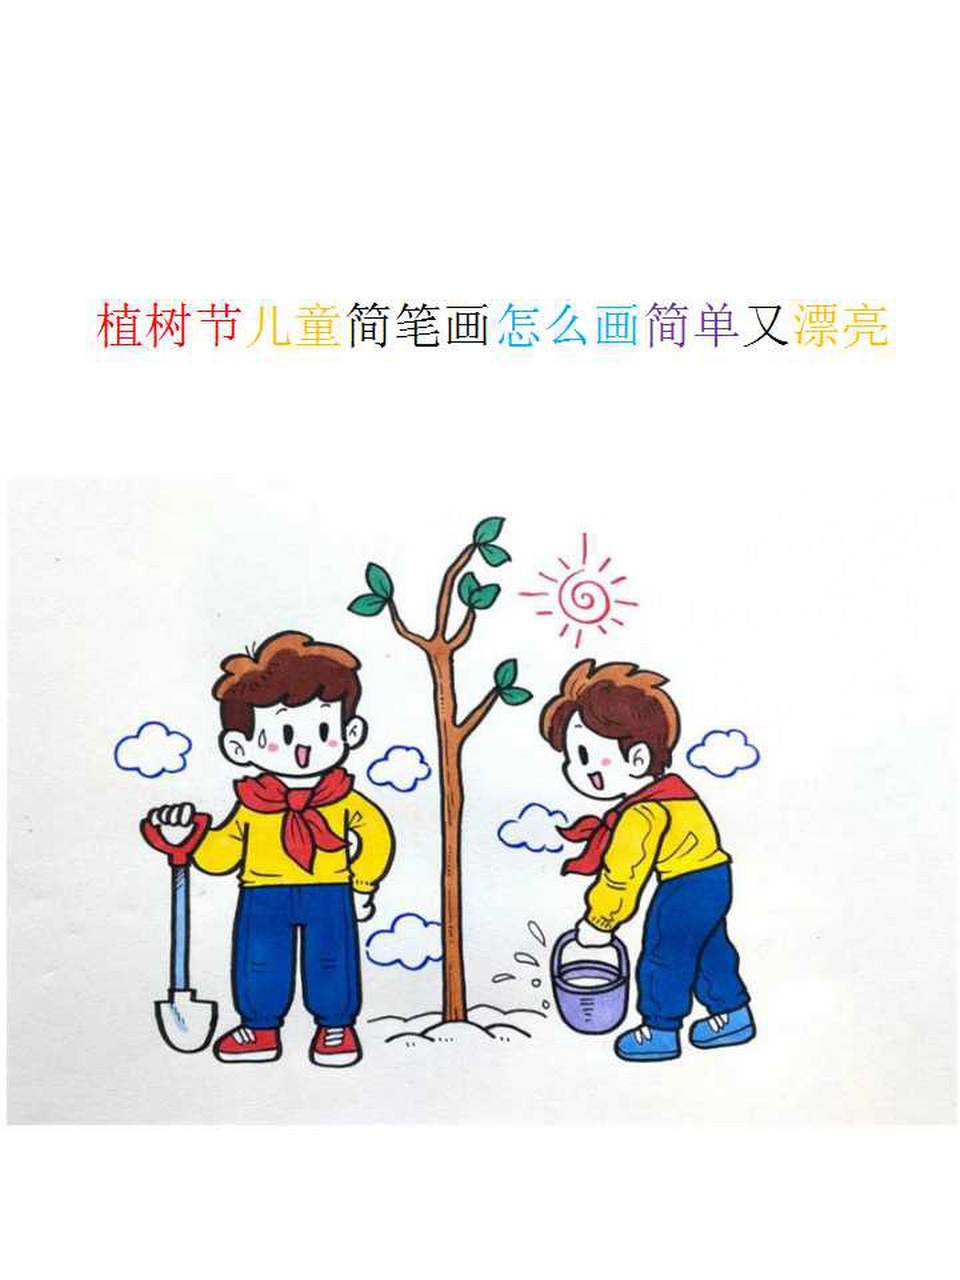 植树的小孩子简笔画图片